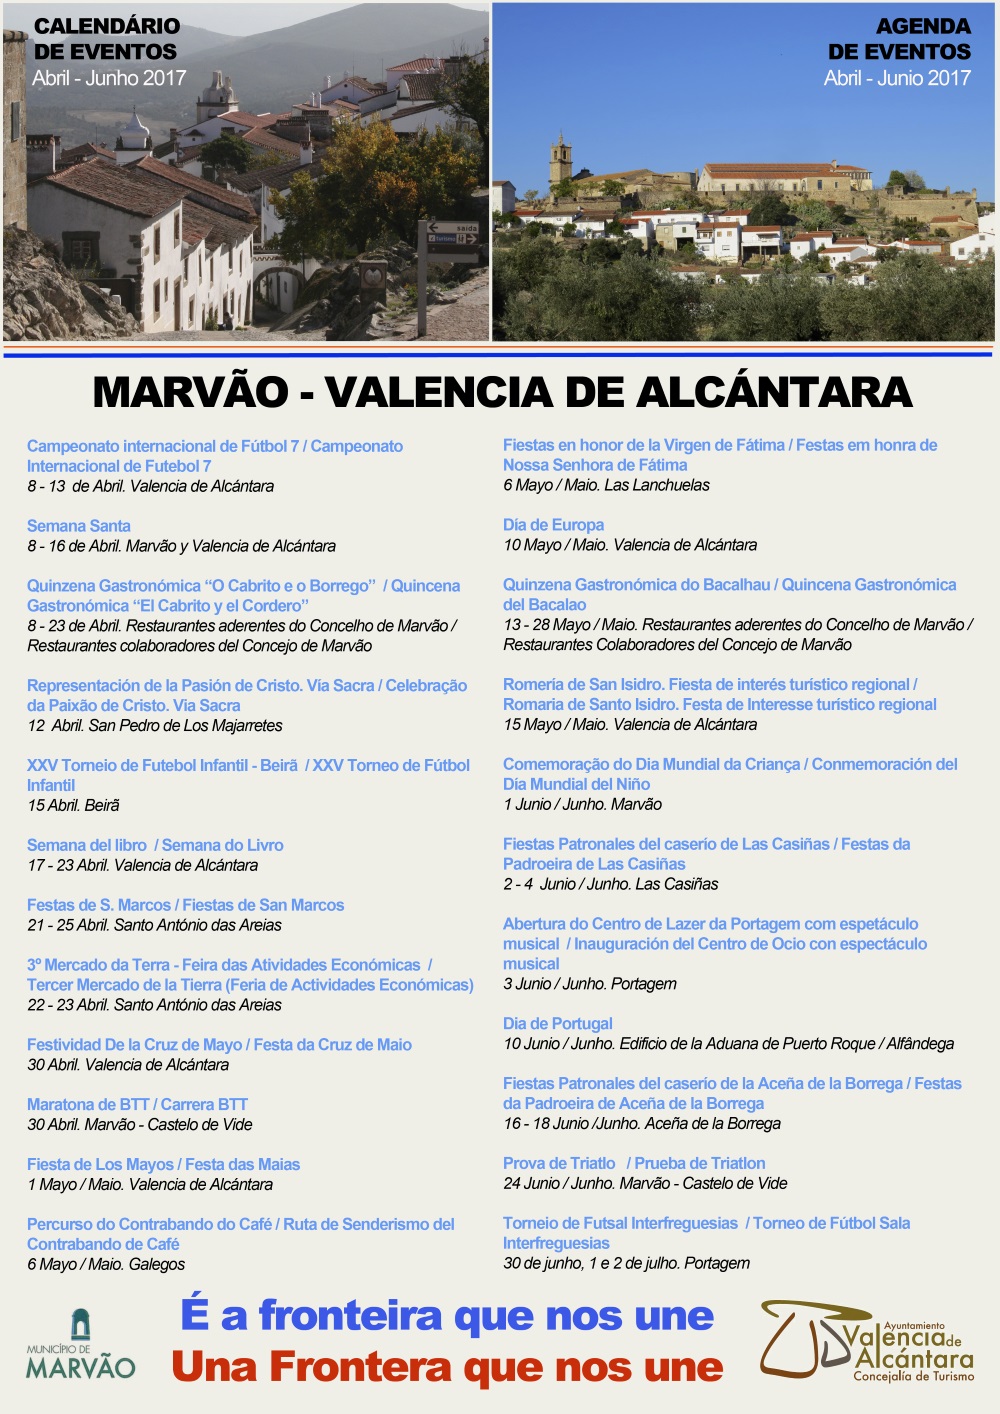 Agenda Eventos Marvao Valencia Abril 2017